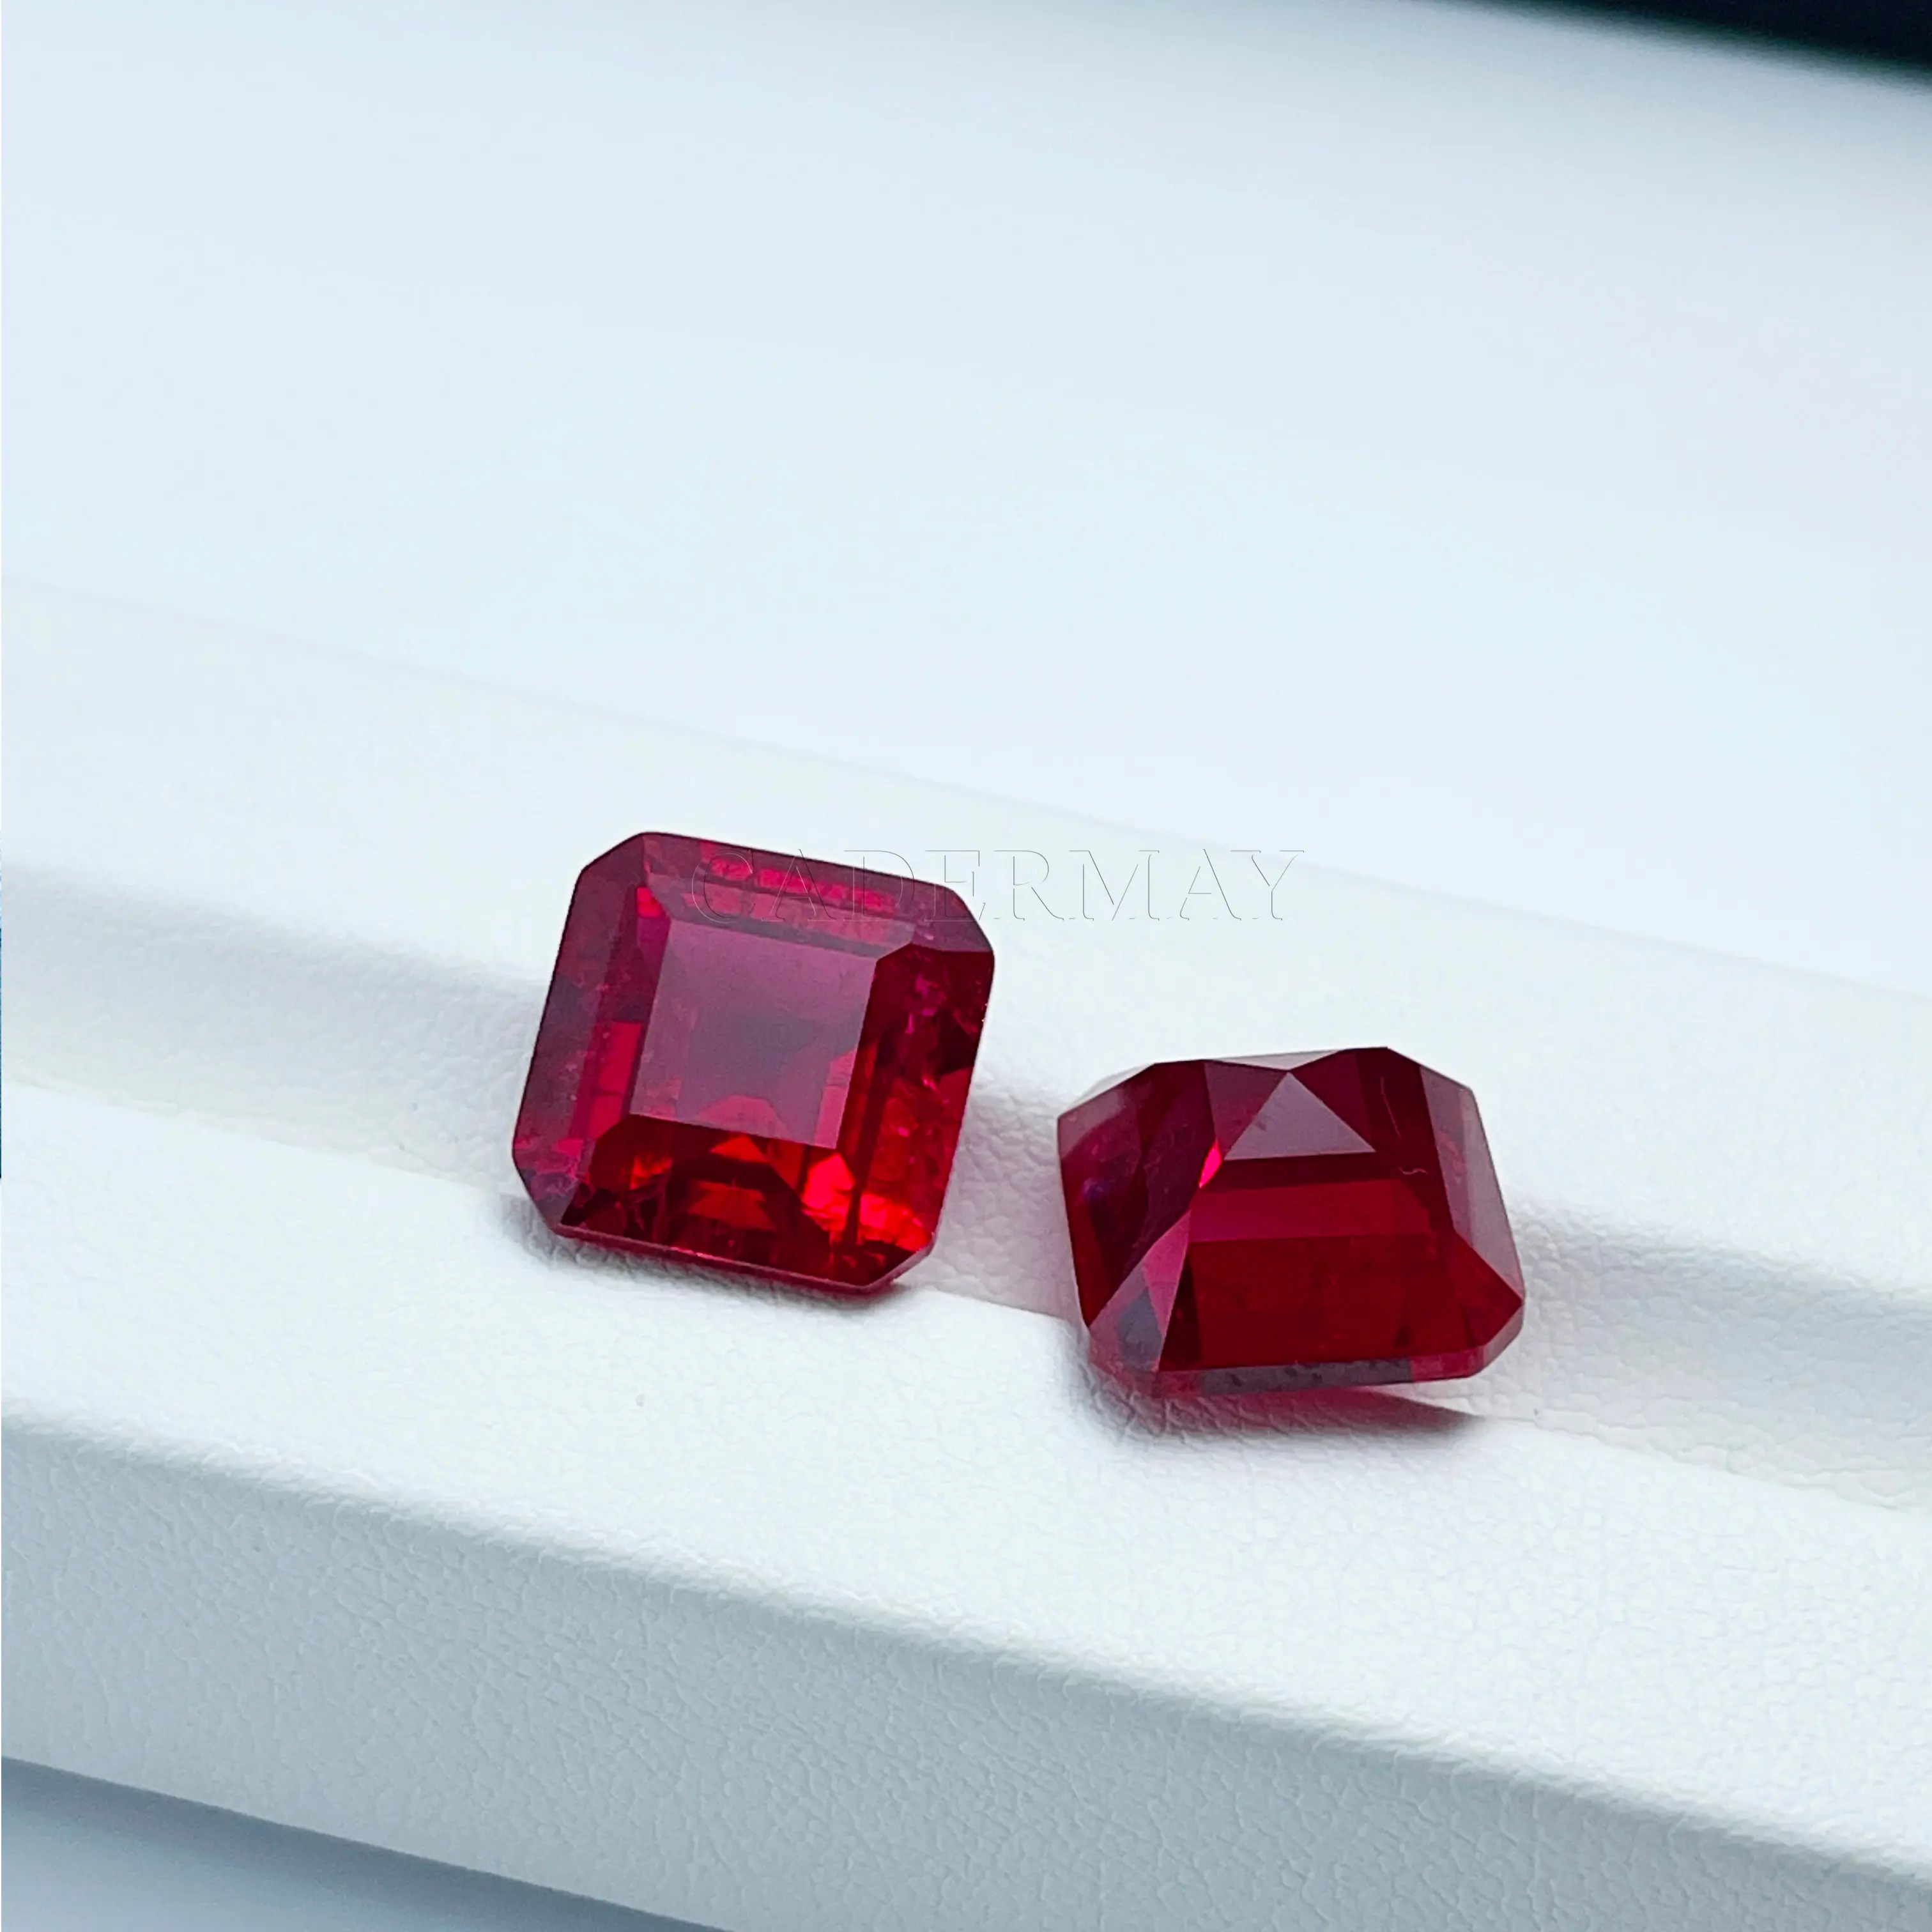 Оптовая продажа синтетических рубиновых драгоценных камней, квадратные щипцы 4x4 мм-12x12 мм, лабораторные Рубиновые камни с небольшими трещинами и включениями